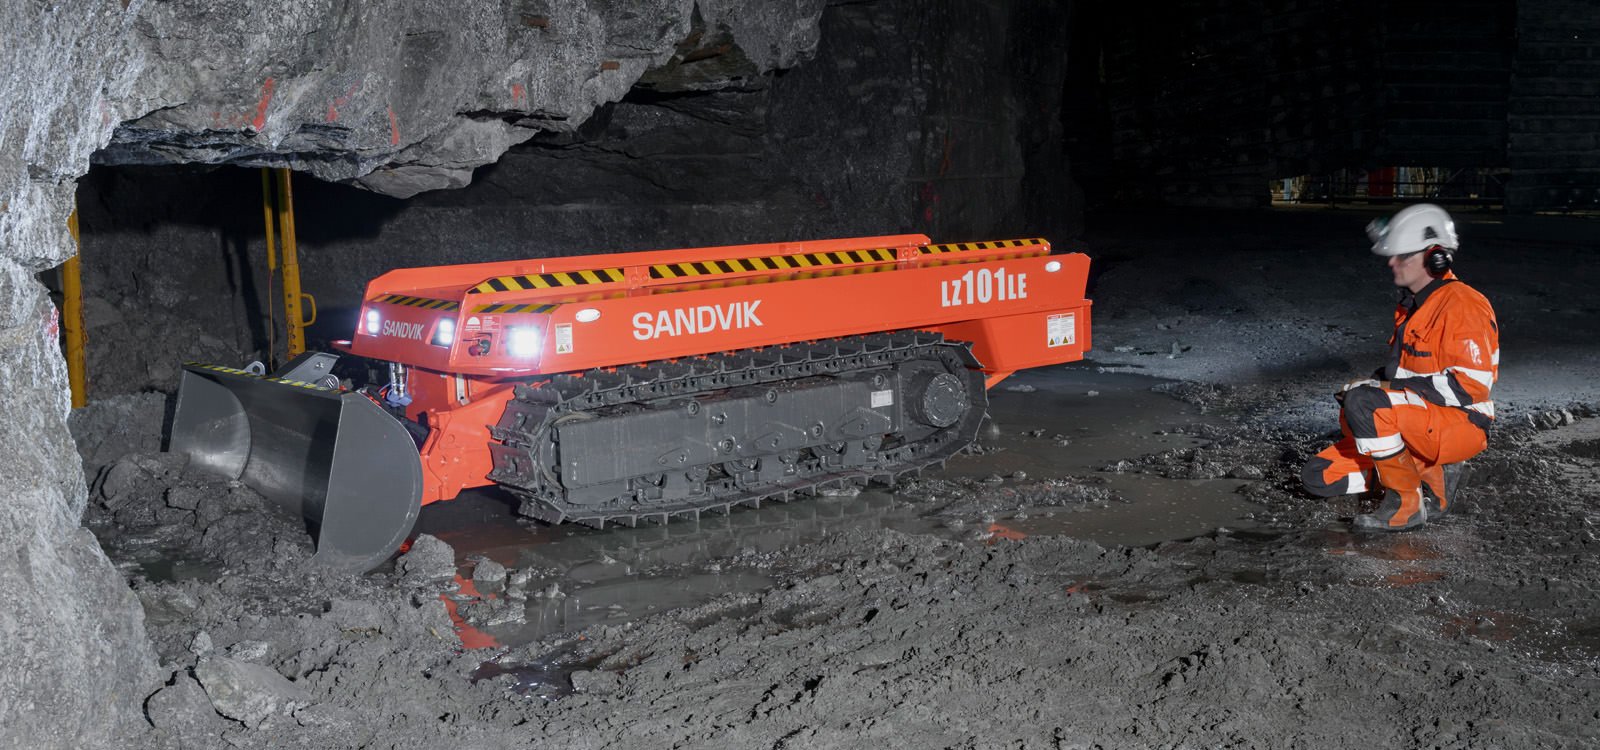 <p>Sandvik LZ101LE d оснащен системой дистанционного управления, которая позволяет операторам работать вдали от опасных участков шахты, не имеющих крепи.</p>
